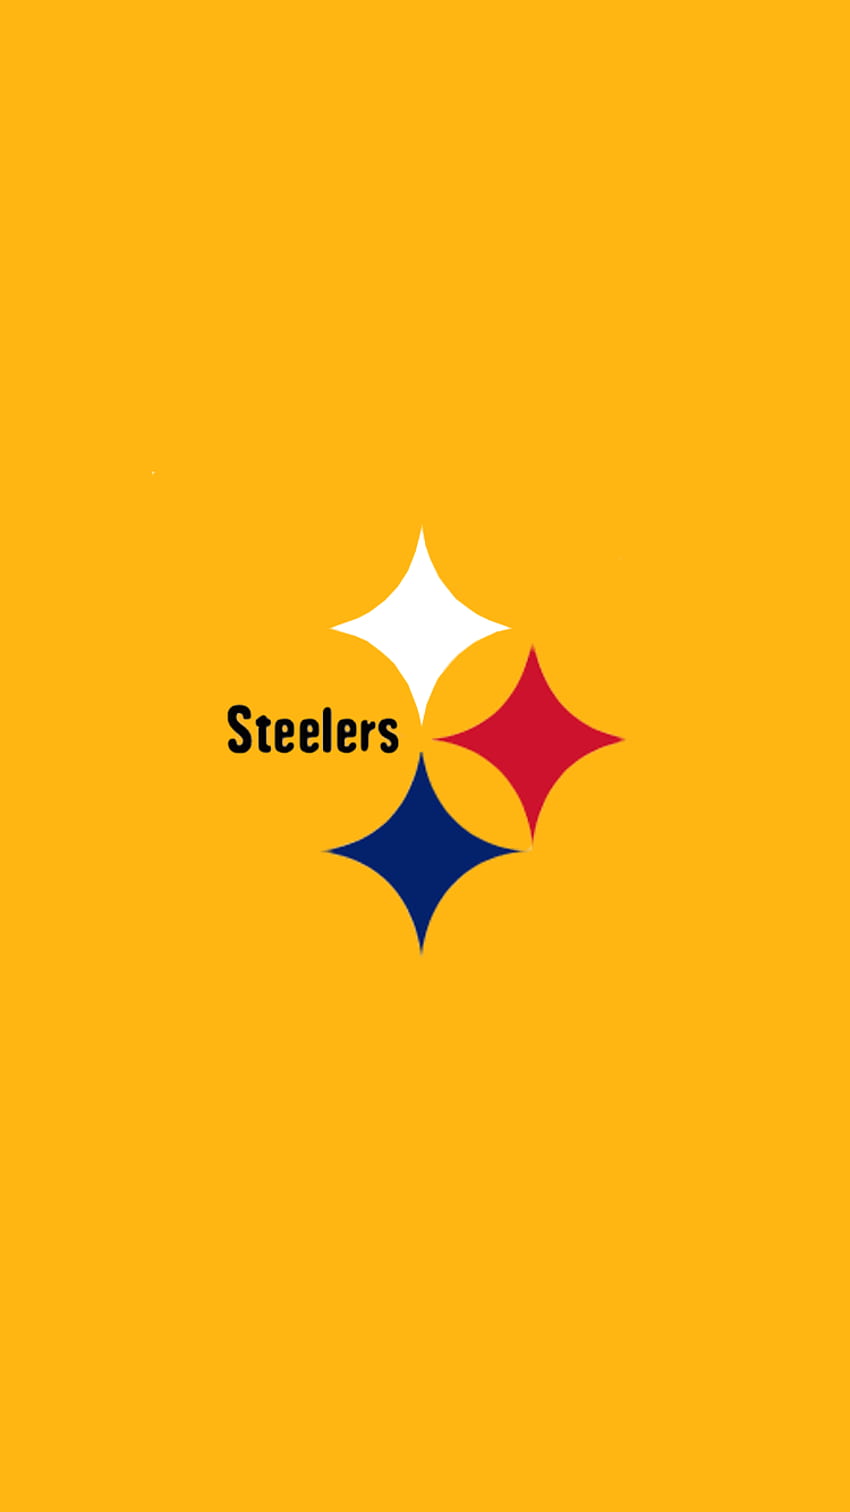 Pittsburgh Steelers IPhone Wallpaper  Steelers Pittsburgh steelers  wallpaper Pittsburgh steelers